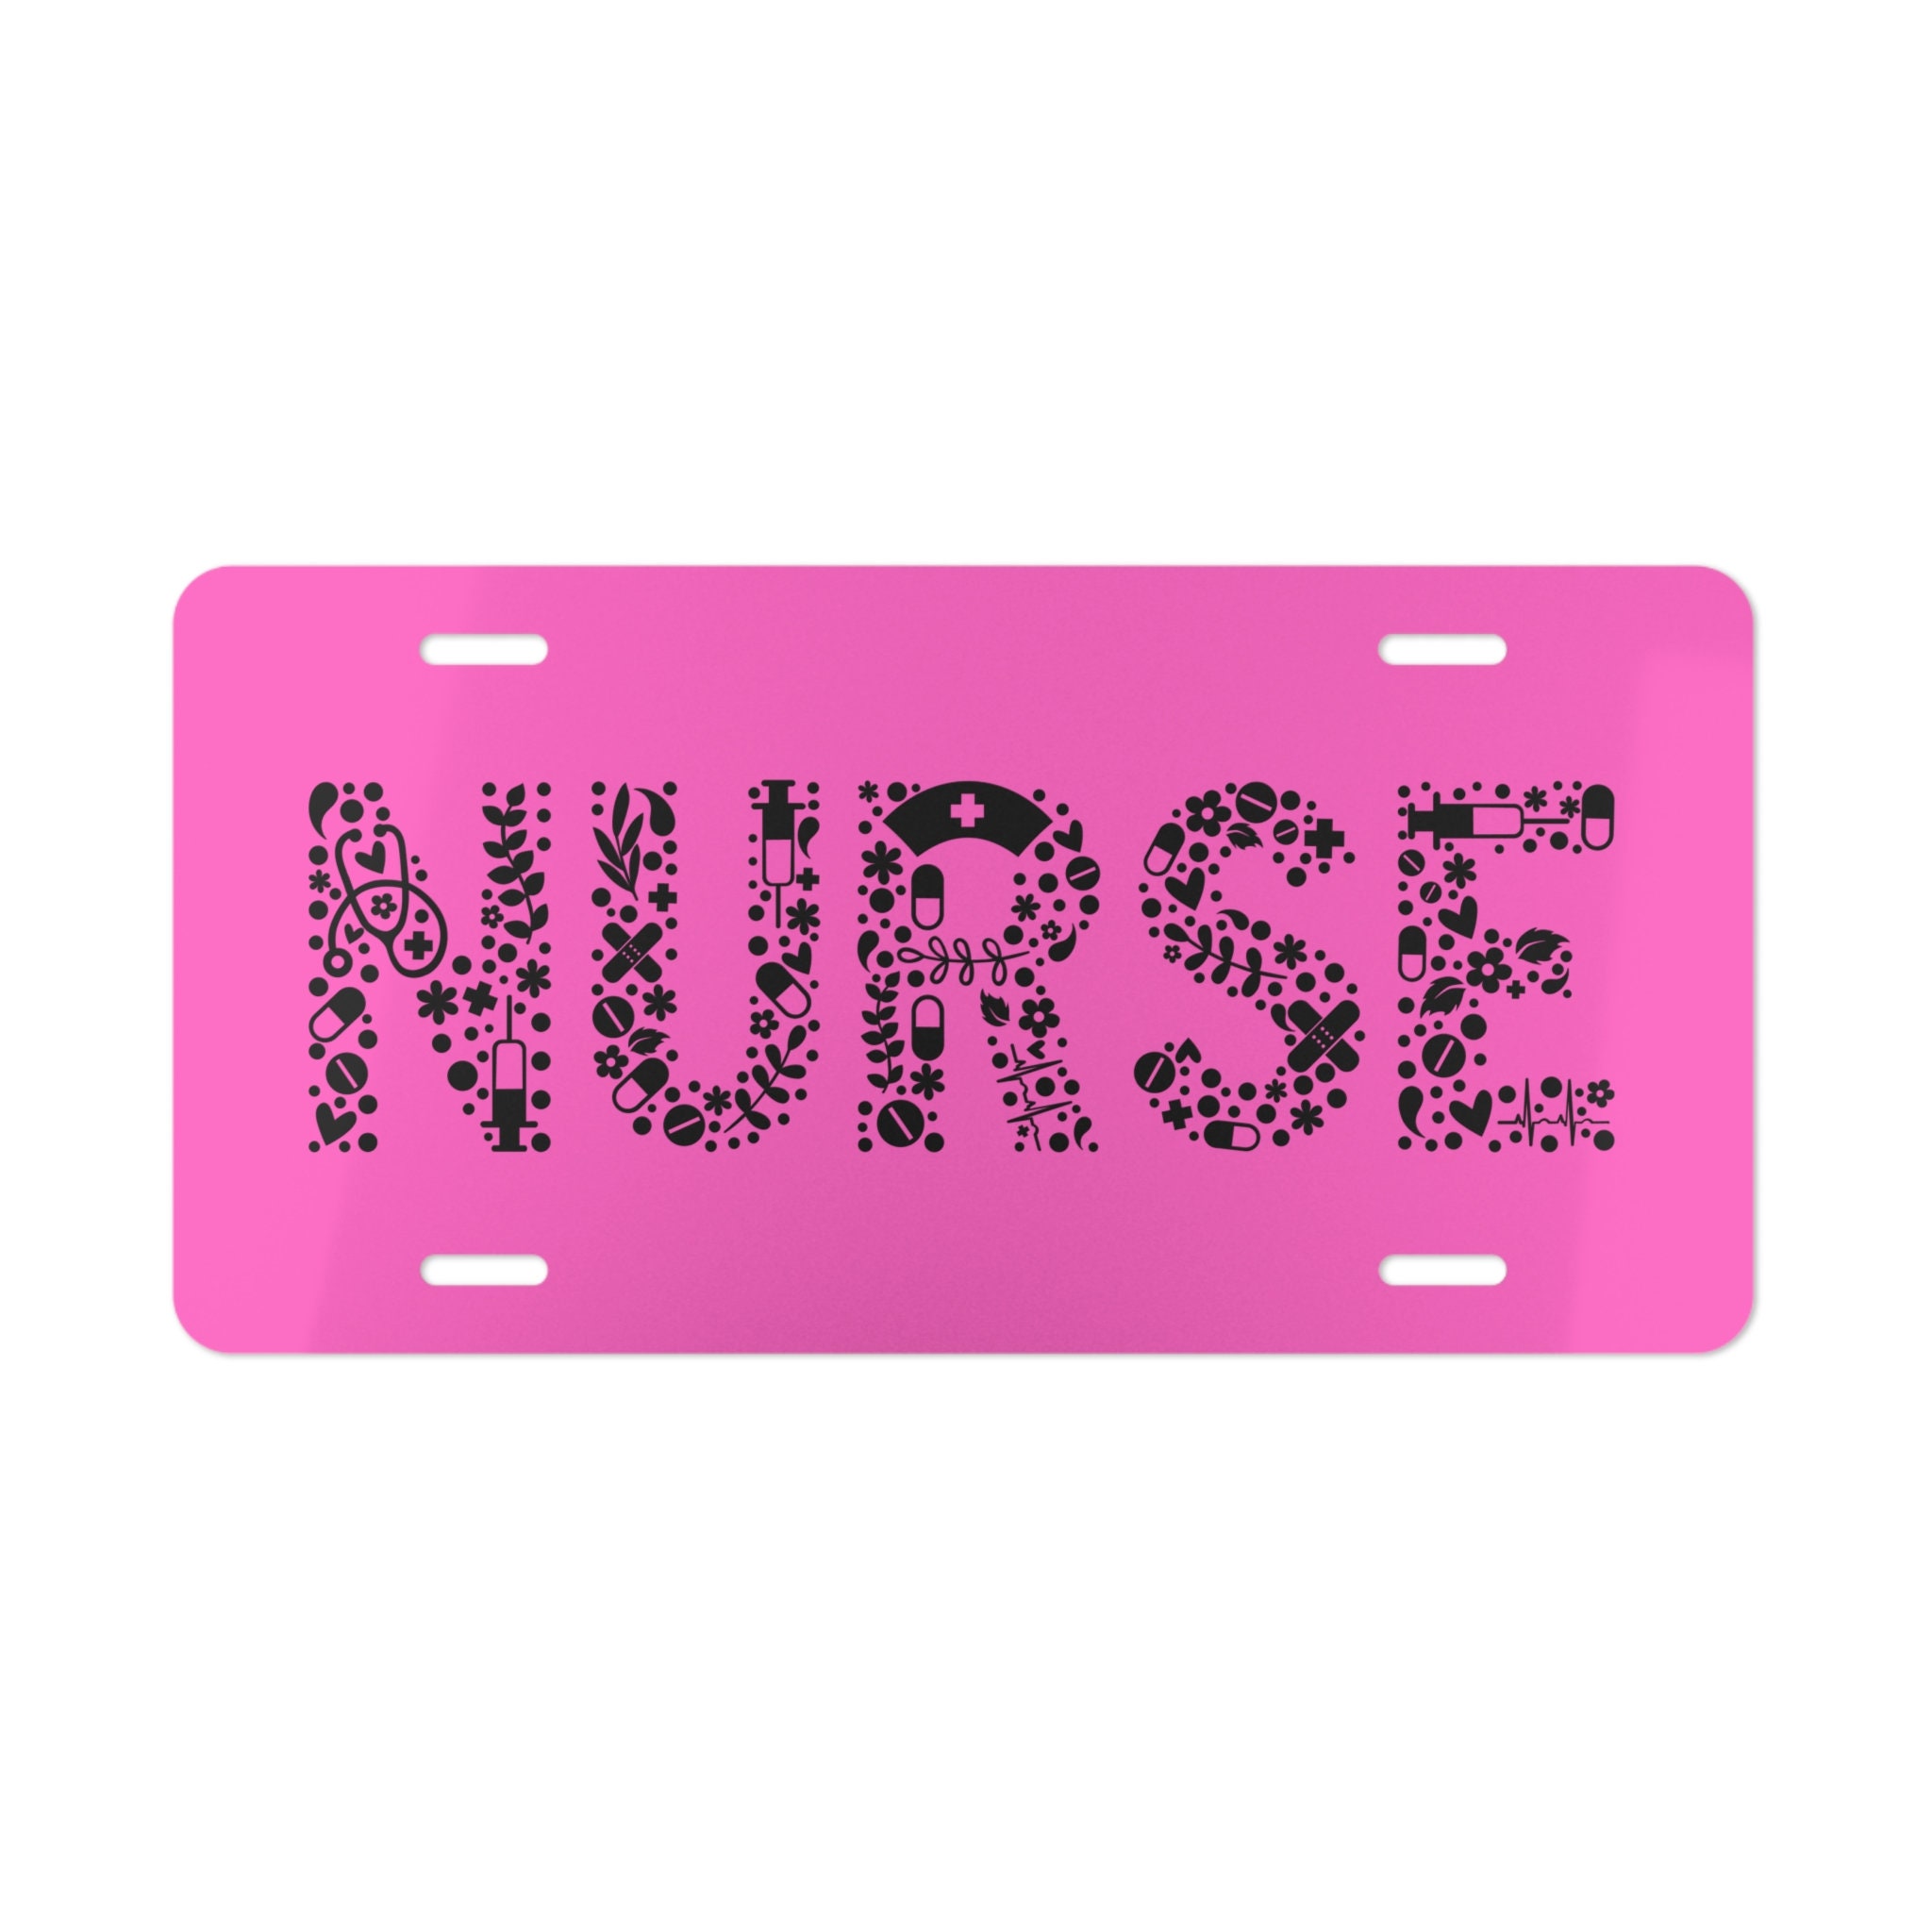 Speedy Pros Metal License Plate Frame Registered Nurse Nurses Metal Career  Profession Holder Car Accessories Soft Pink 2 Holes 1 Frame